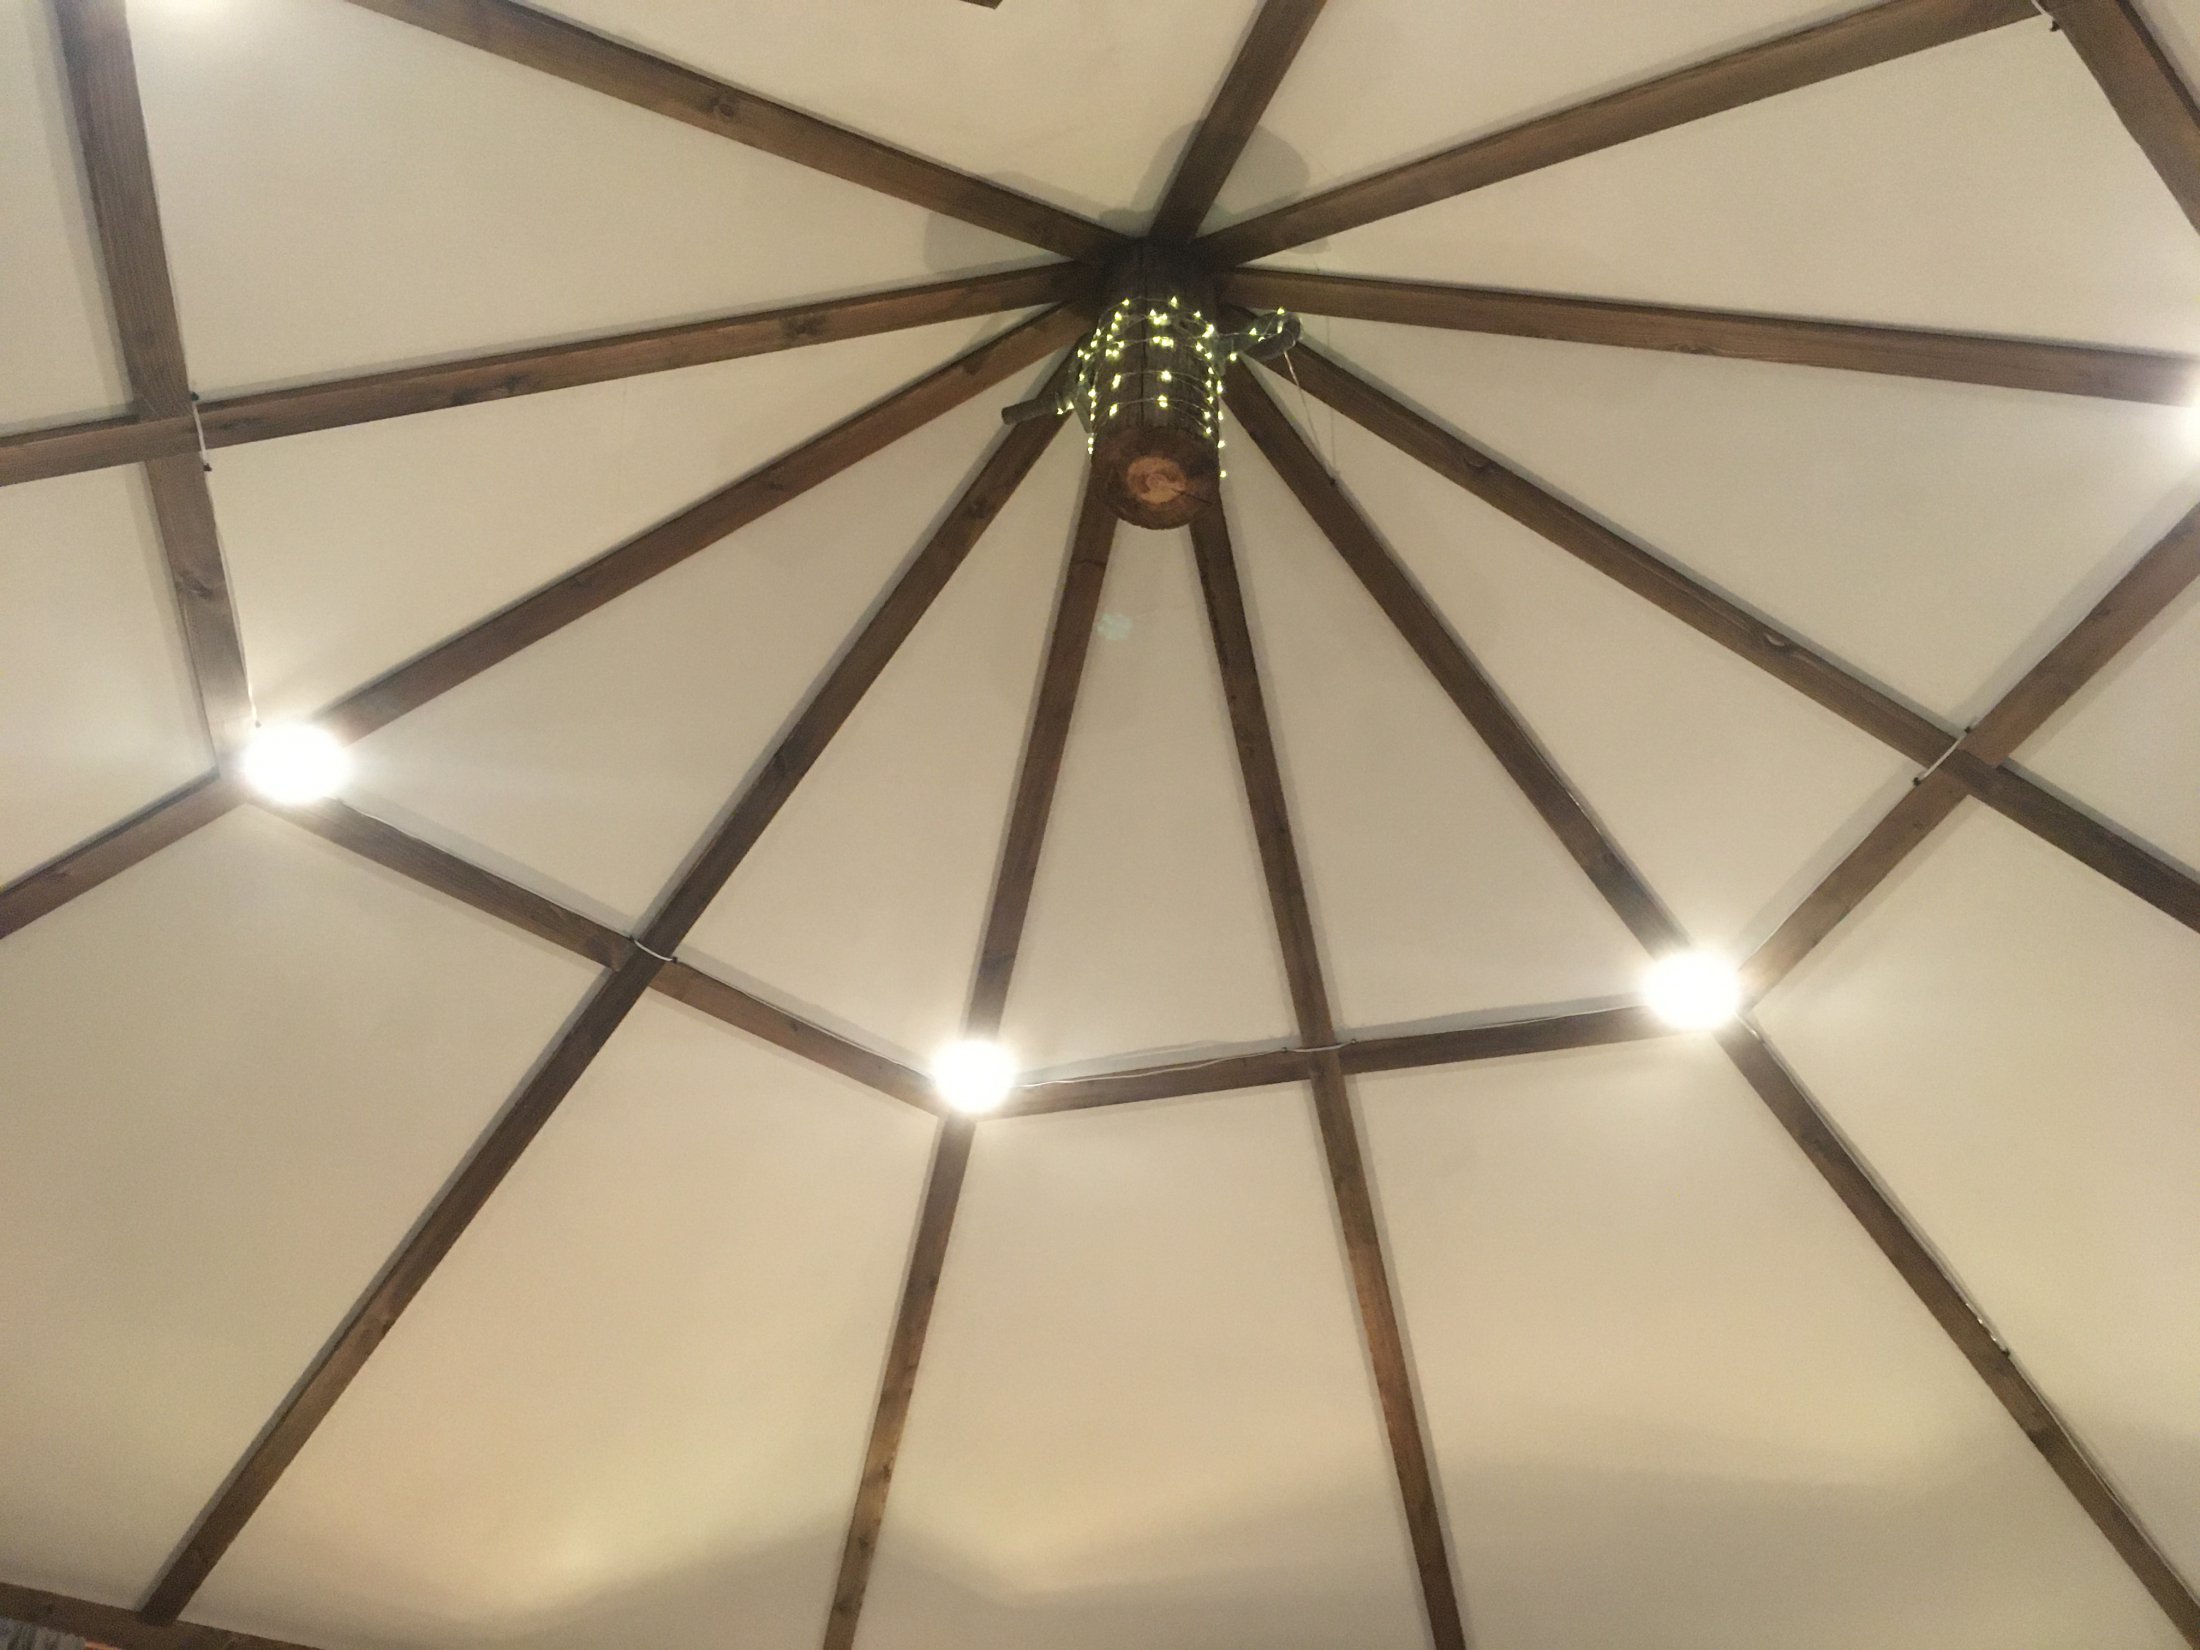 Noss Mayo yurt ceiling at night